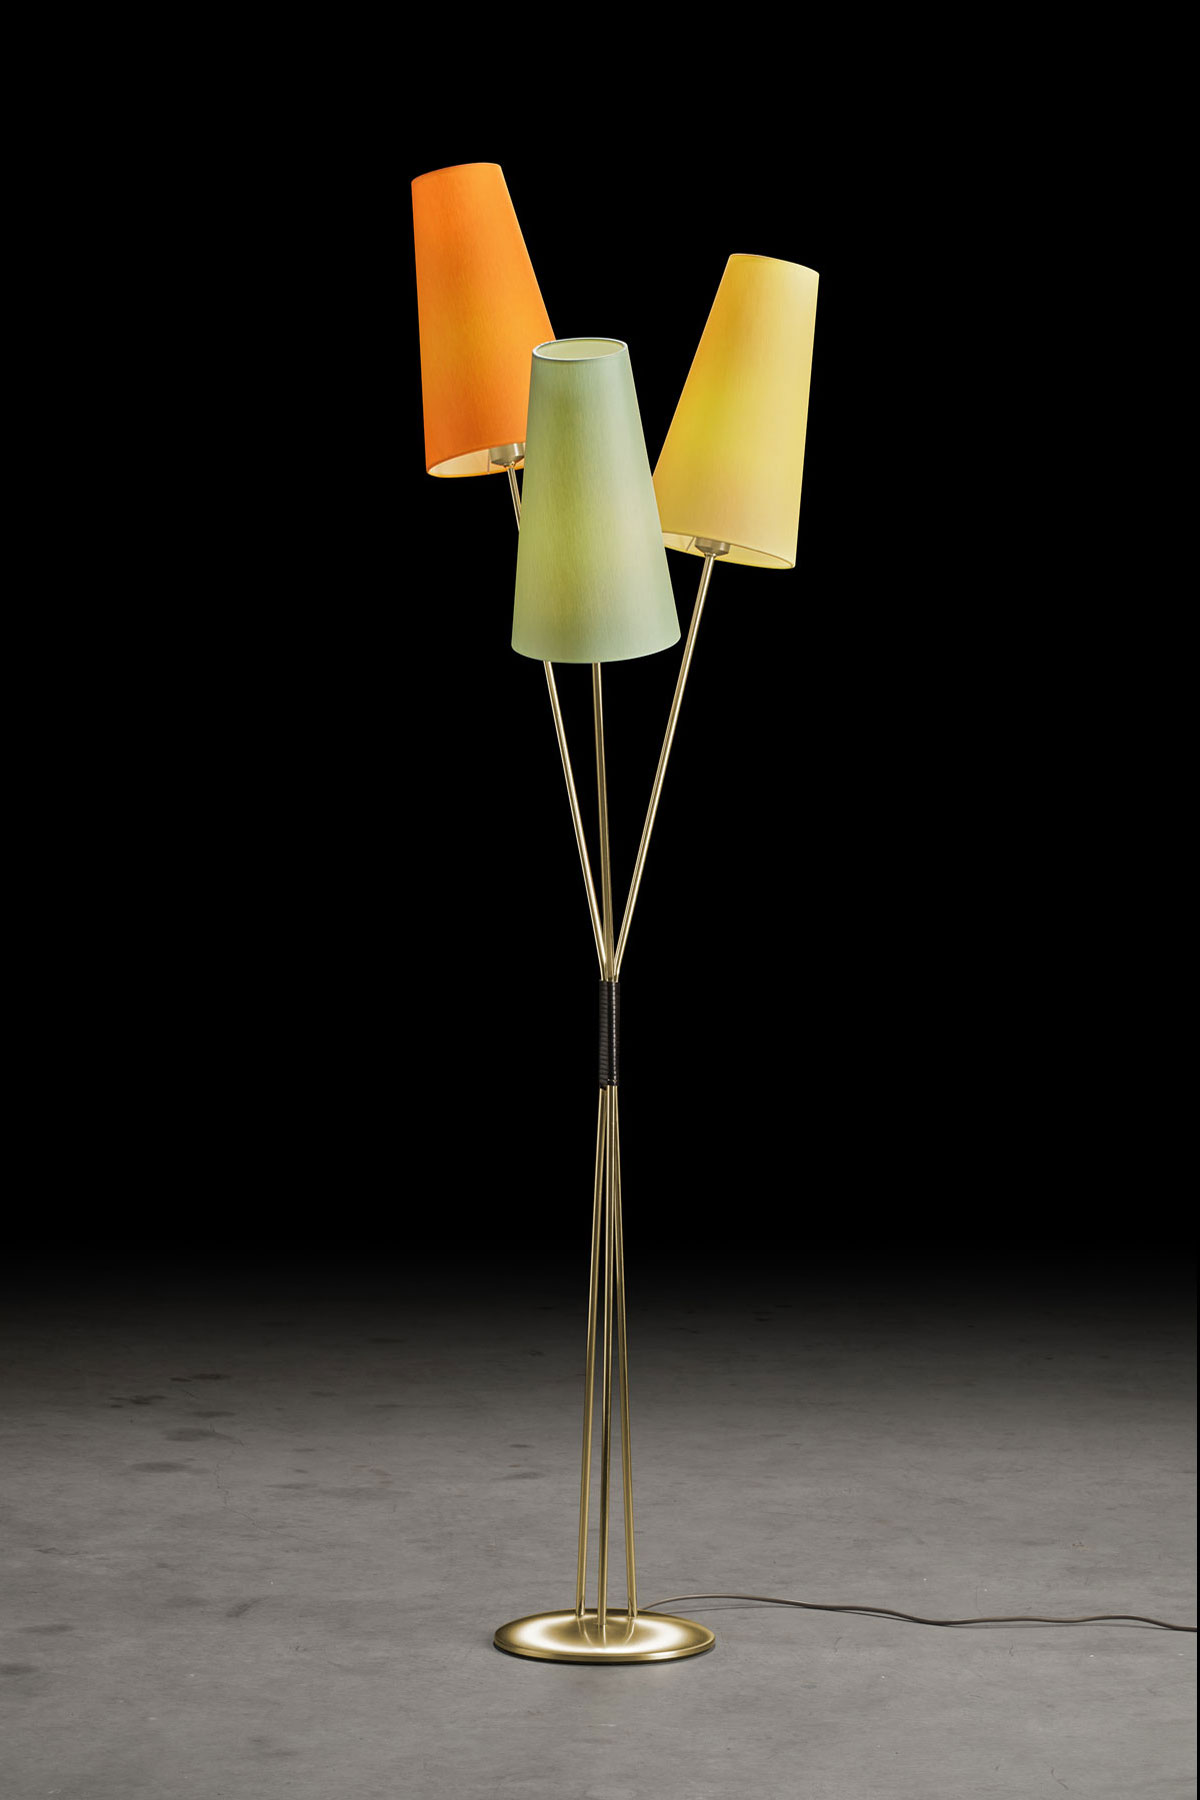 FIFTIES – Stehlampe im 50er Jahre-Look mit drei Schirmen im Bündel, viele Farben: Gestell in Messing matt, Schirme in Mint, Orange, Gelb